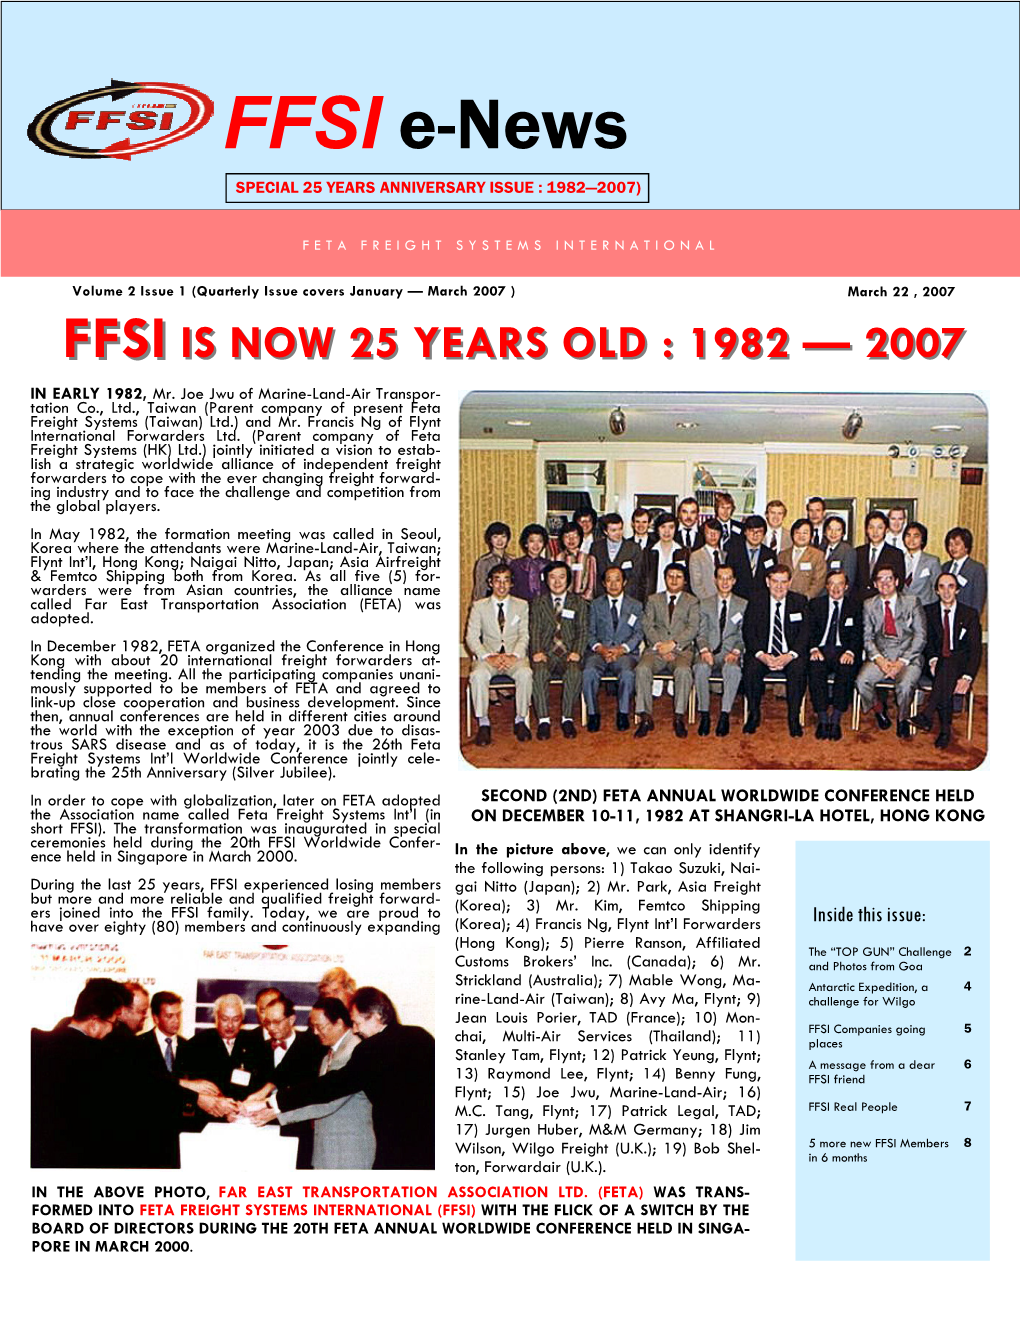 FFSI E-News-20070322